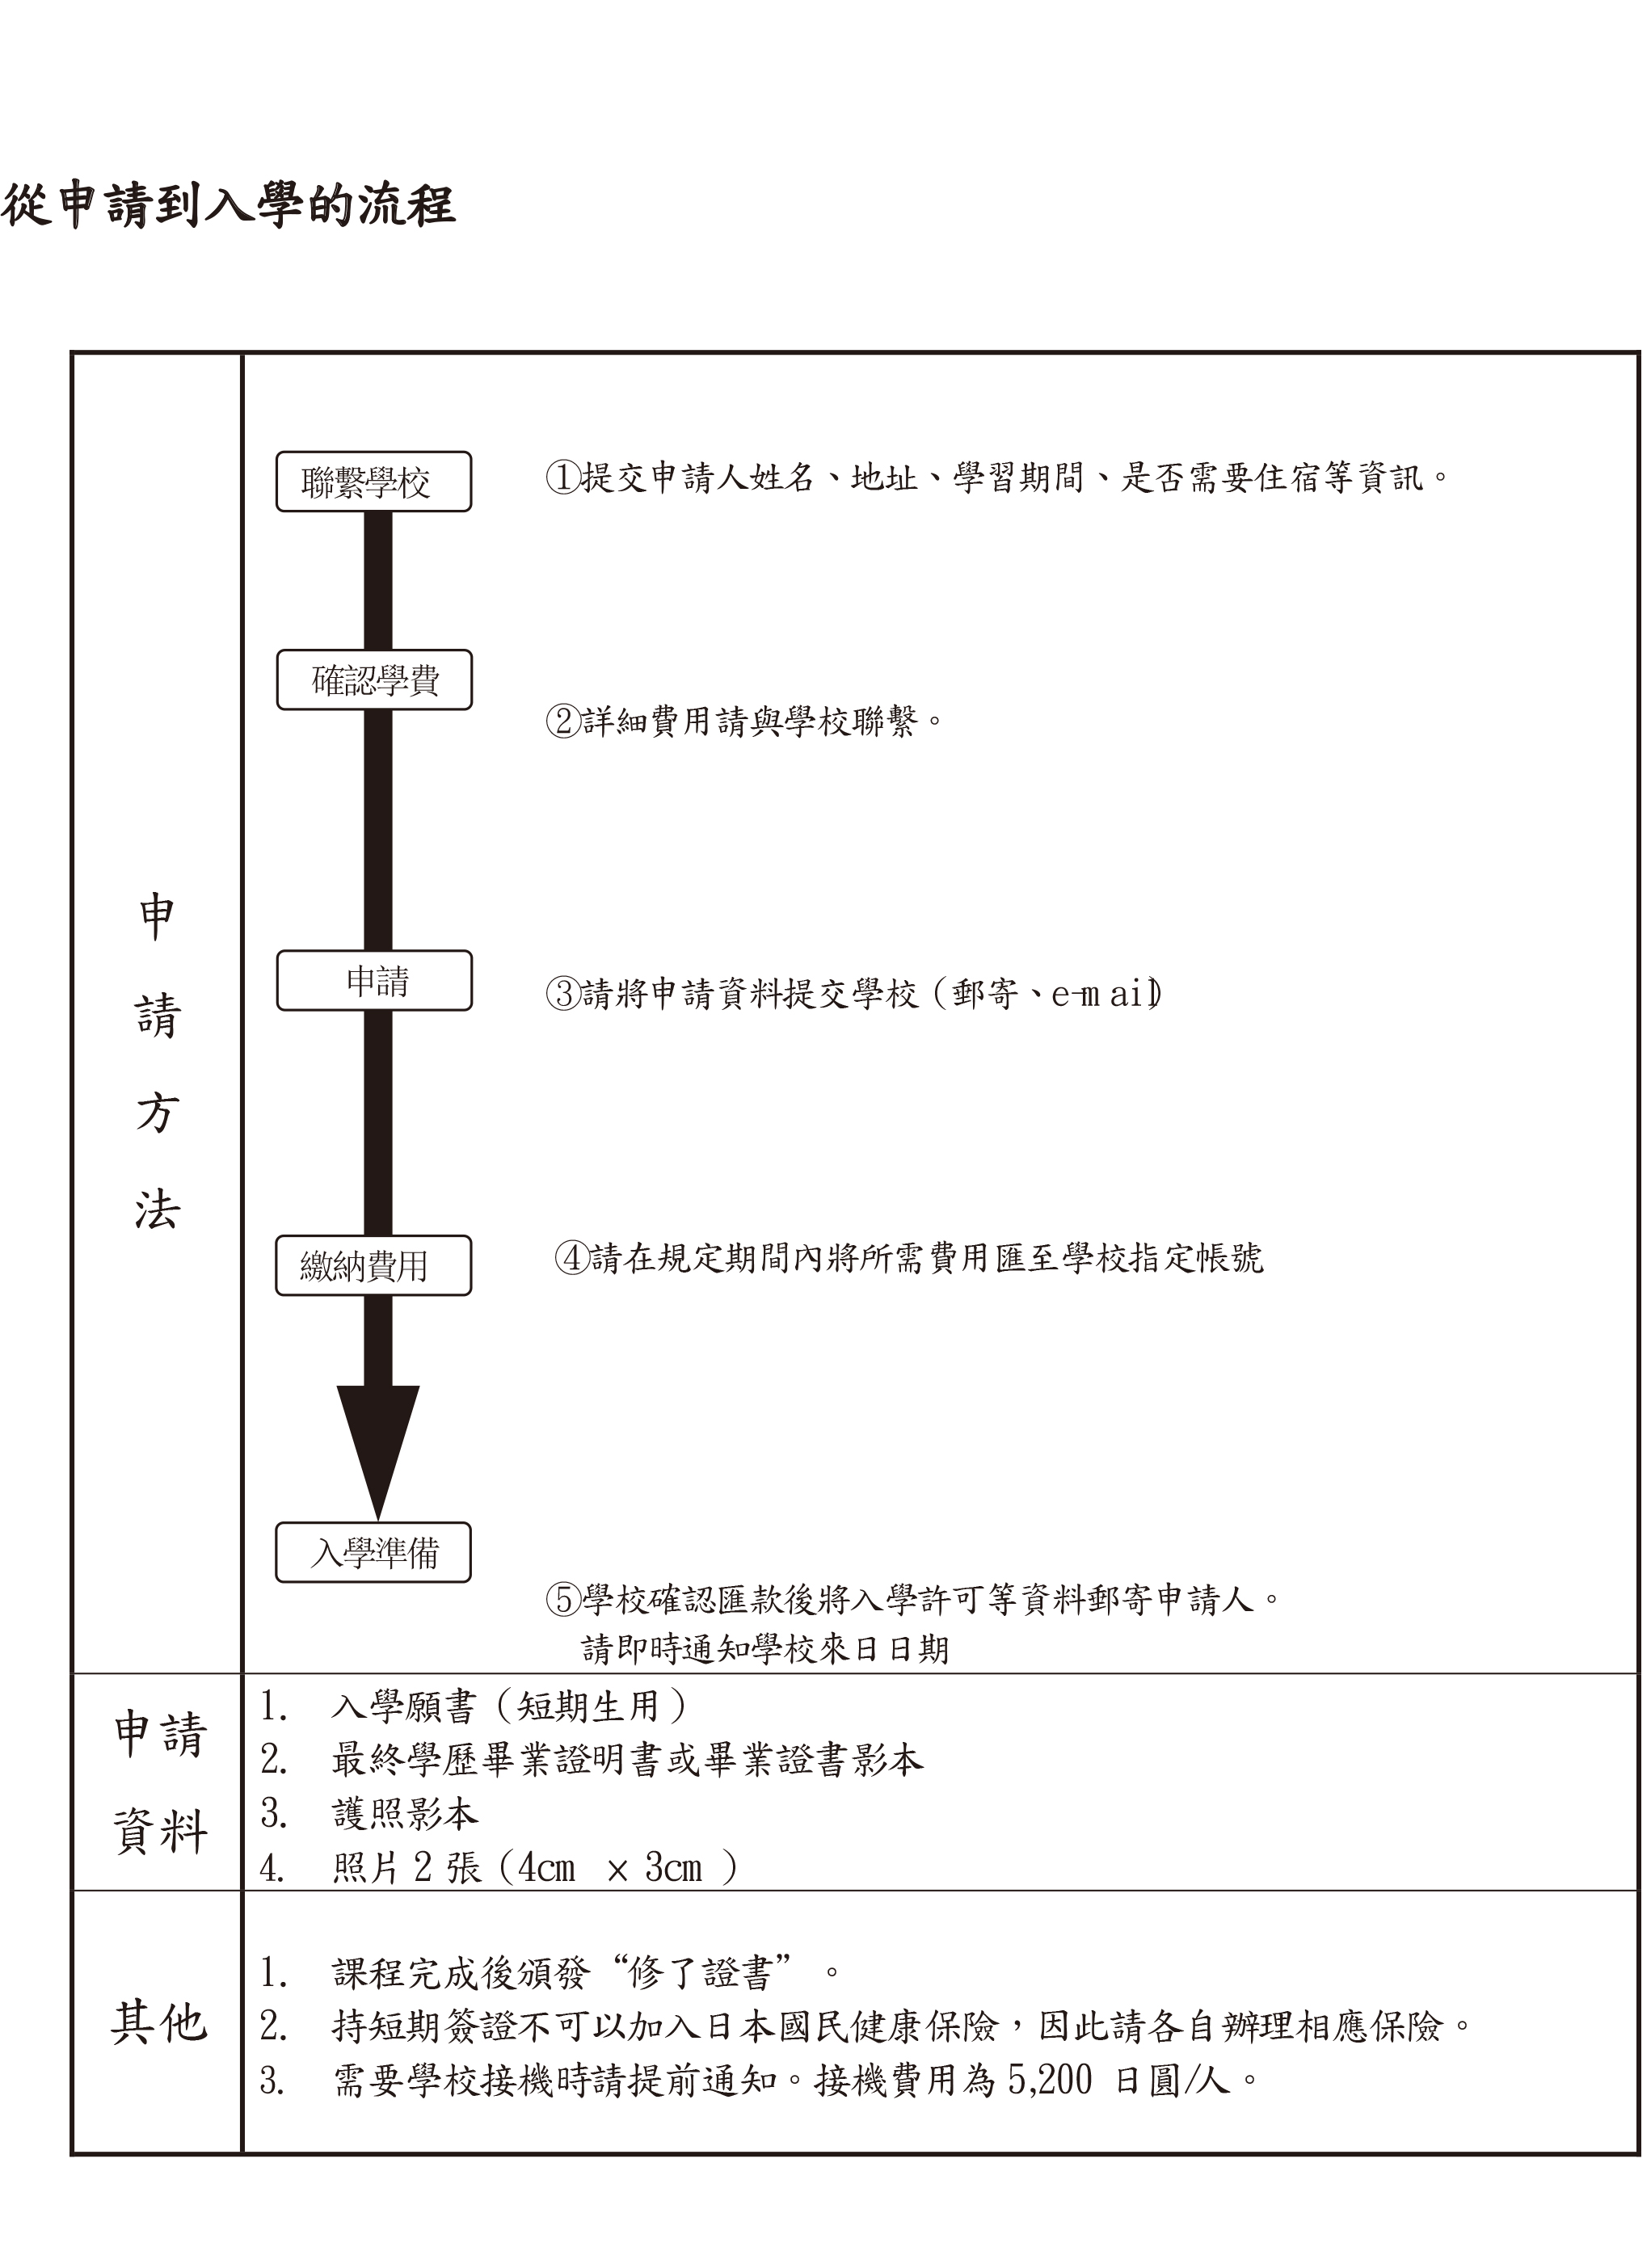 日本留學申請流程及簡章-申請流程